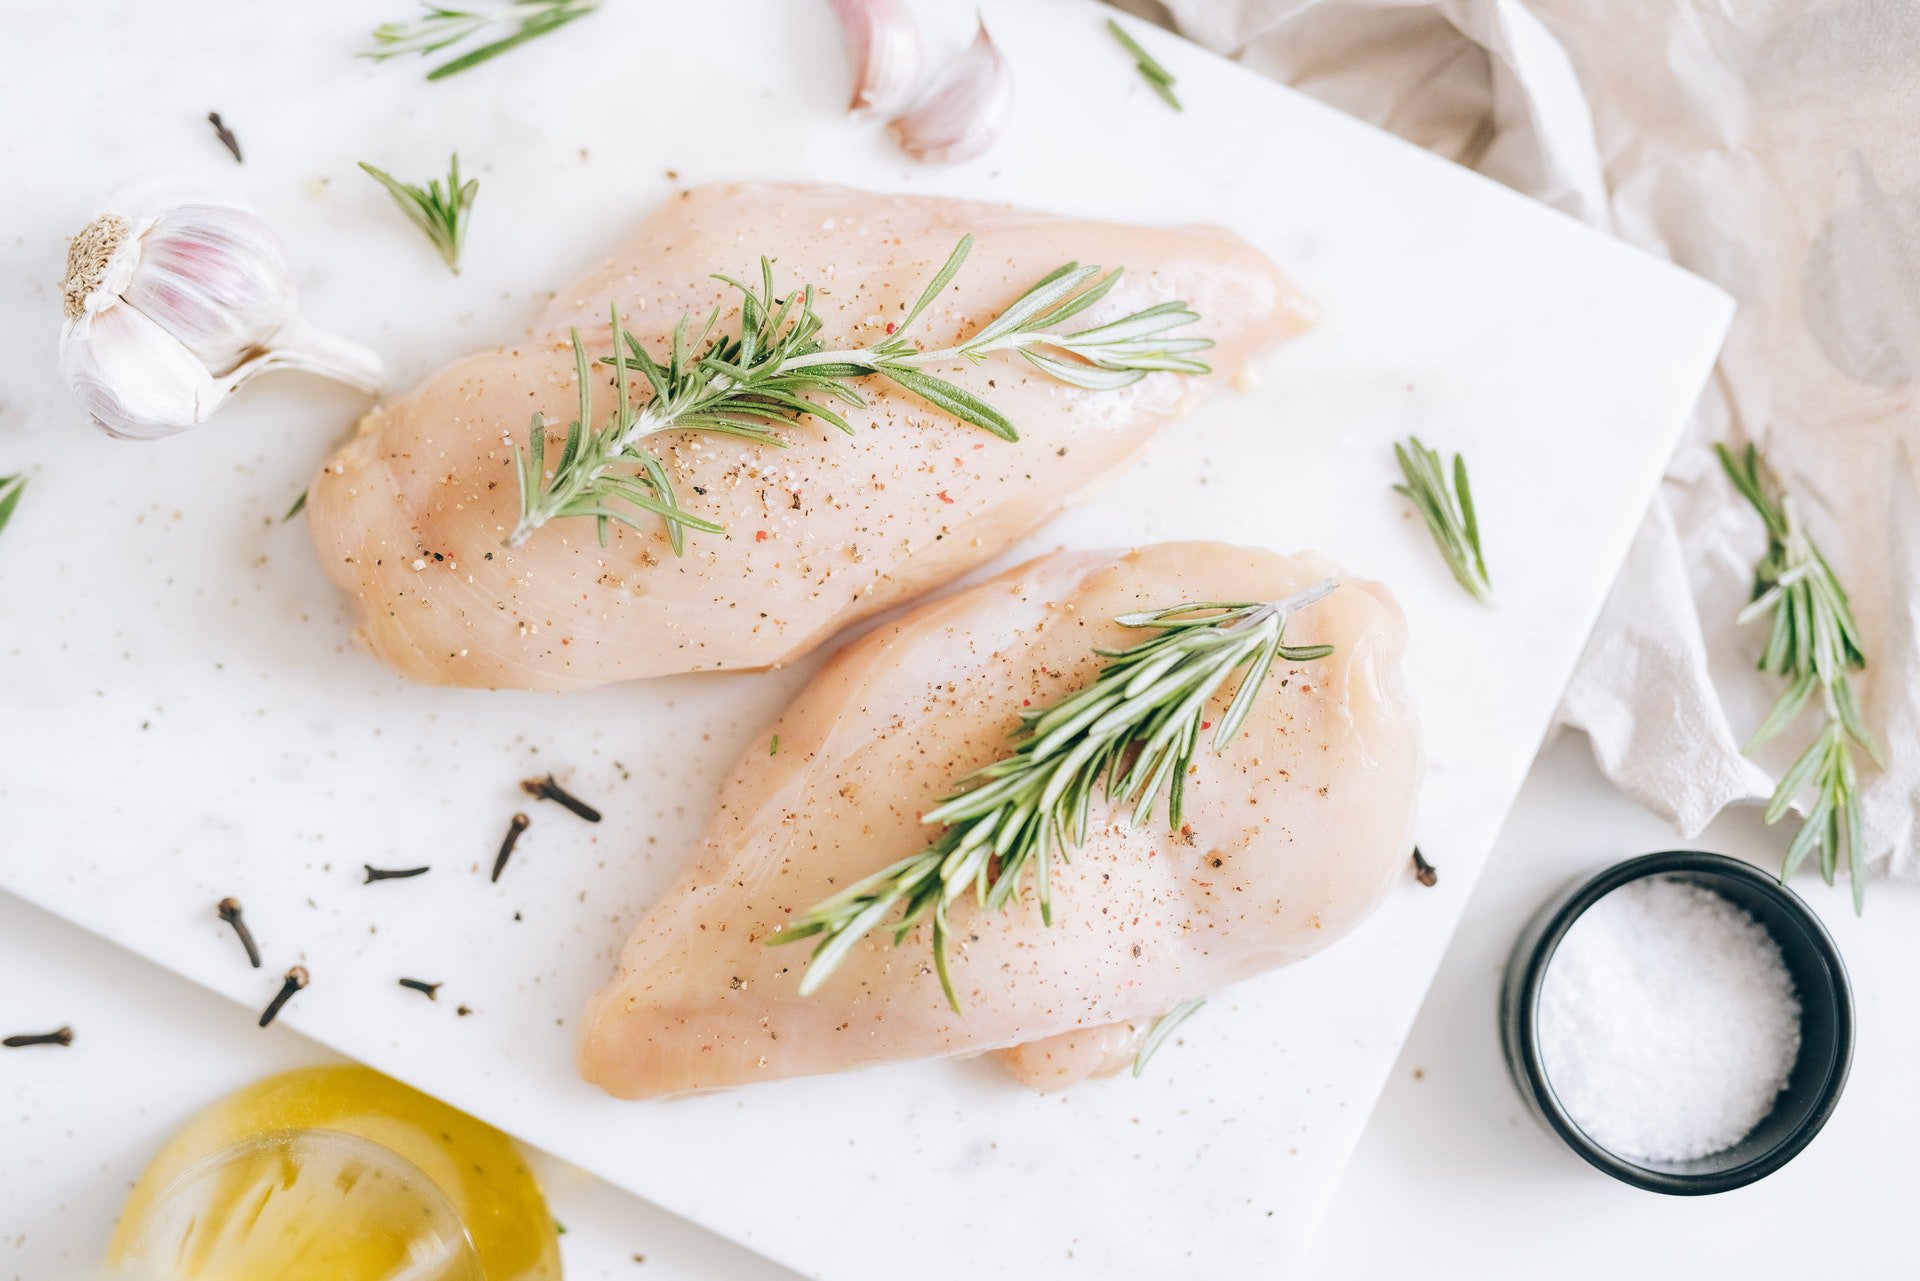 Pechuga de pollo como fuente de proteína en la dieta mediterránea